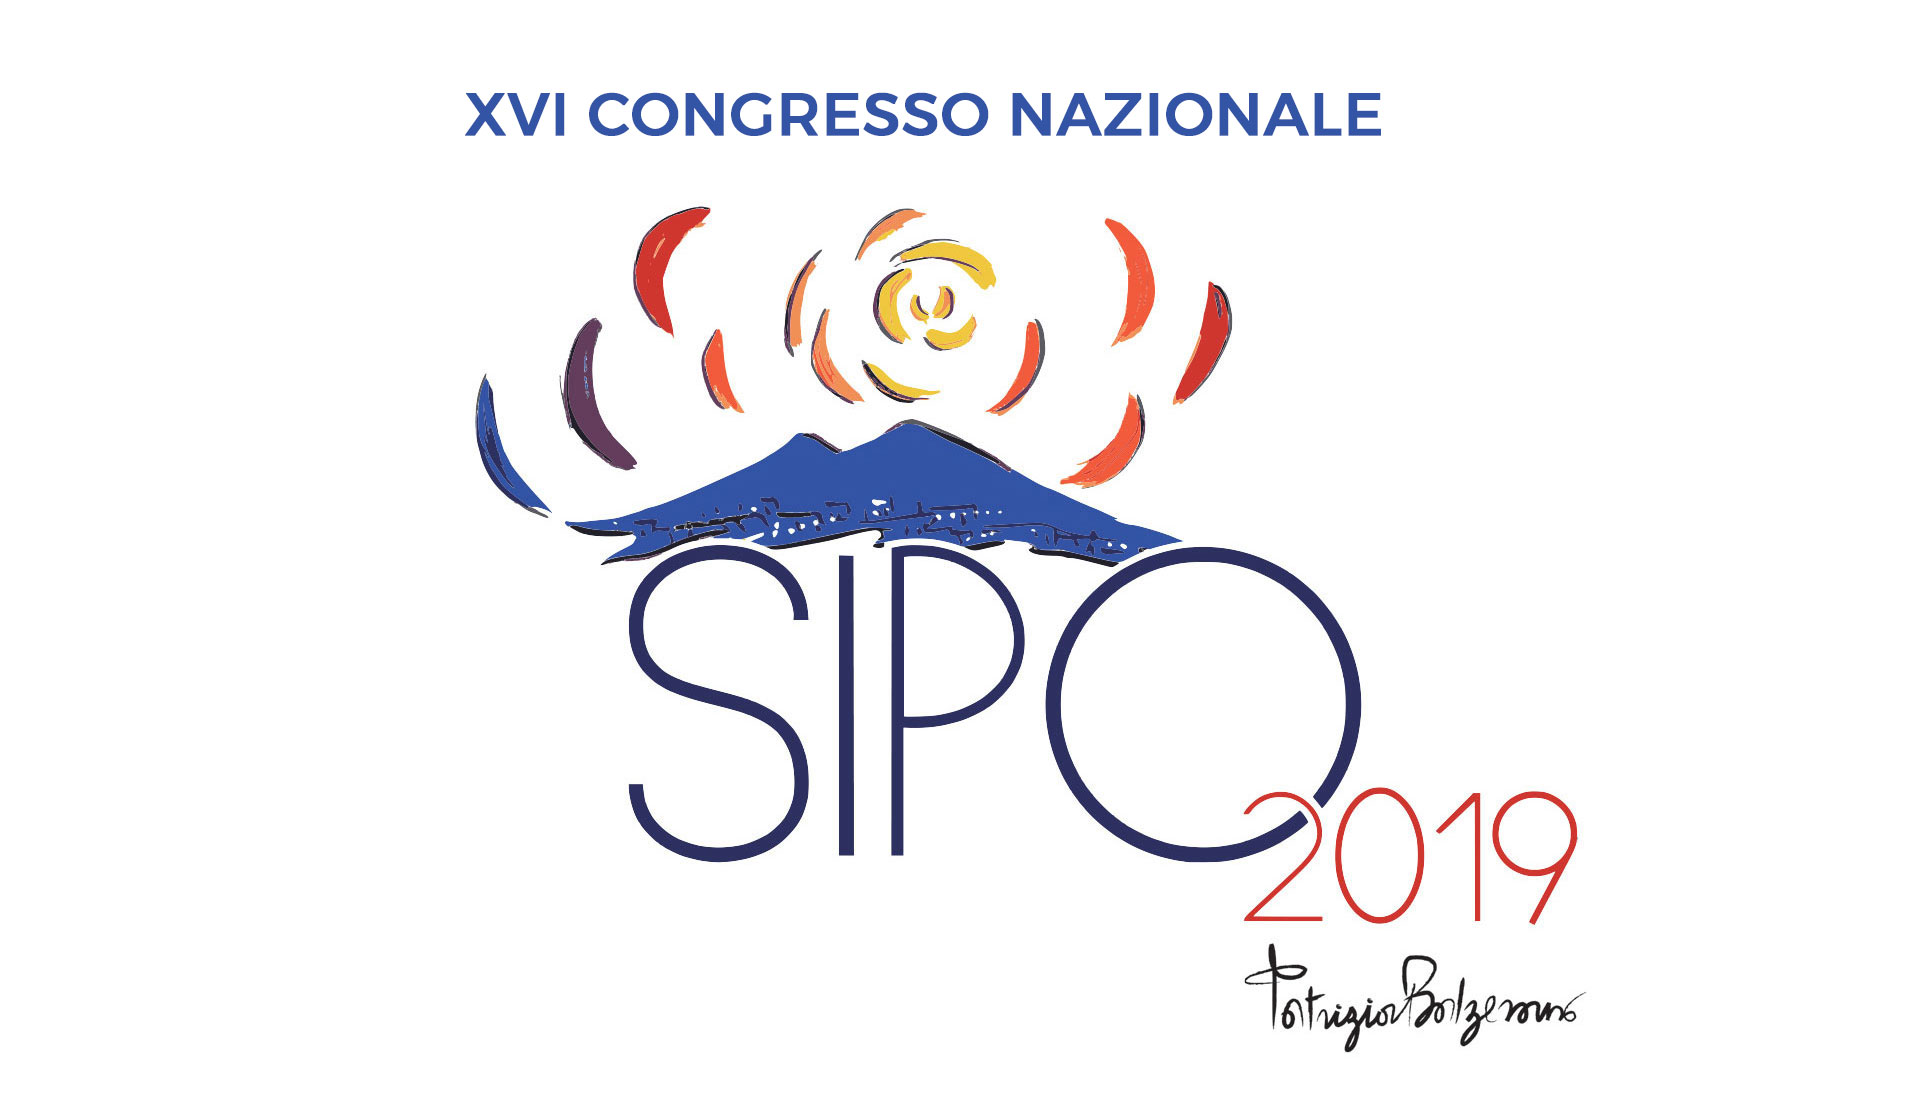 XVI CONGRESSO NAZIONALE Società Italiana di Psico-Oncologia